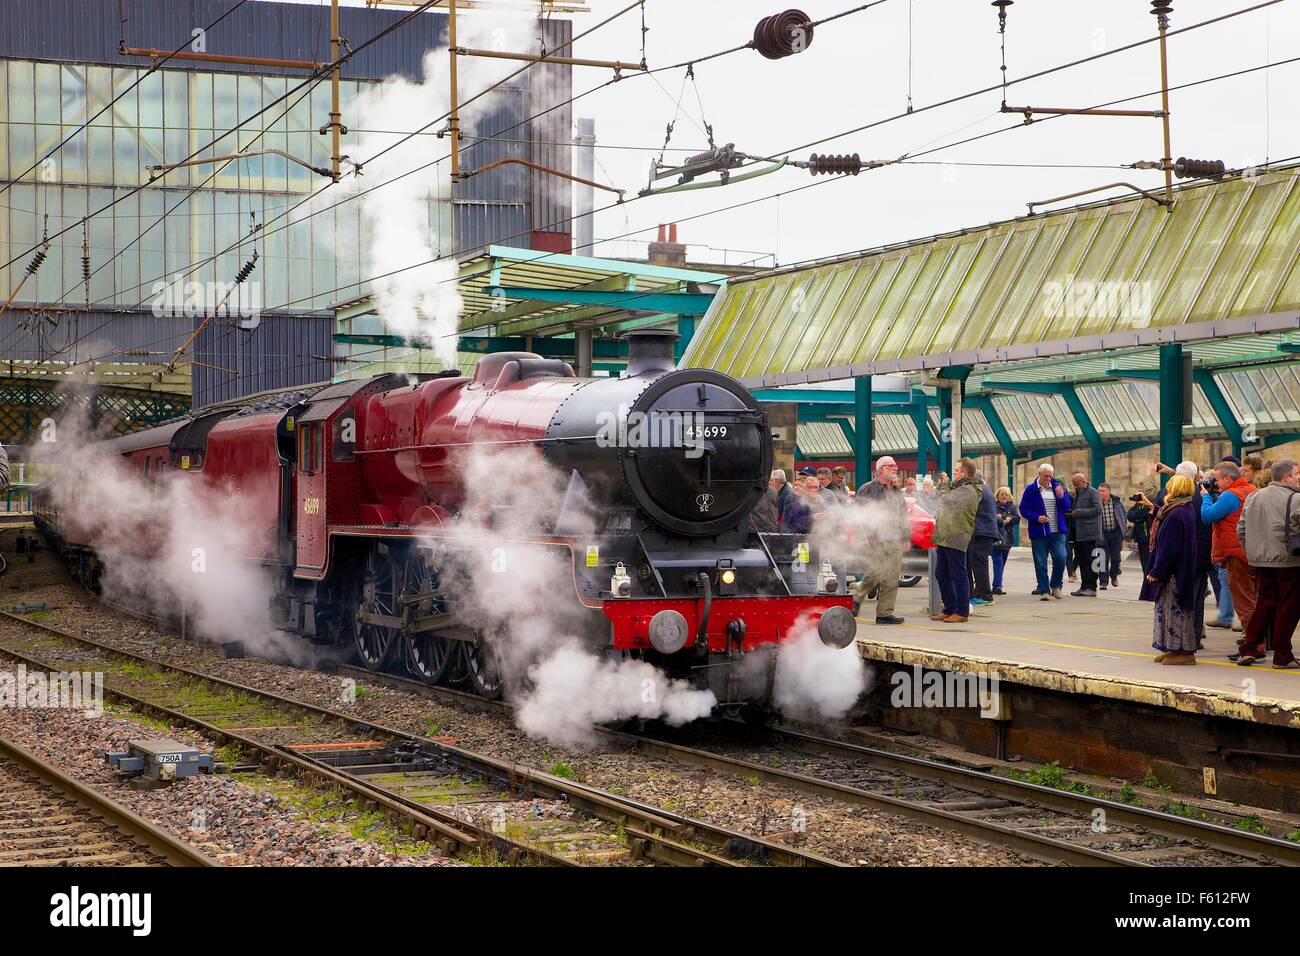 LMS train à vapeur classe Jubilee 45699 Galatea. La gare de Carlisle, Carlisle, Cumbria, England, UK. Banque D'Images